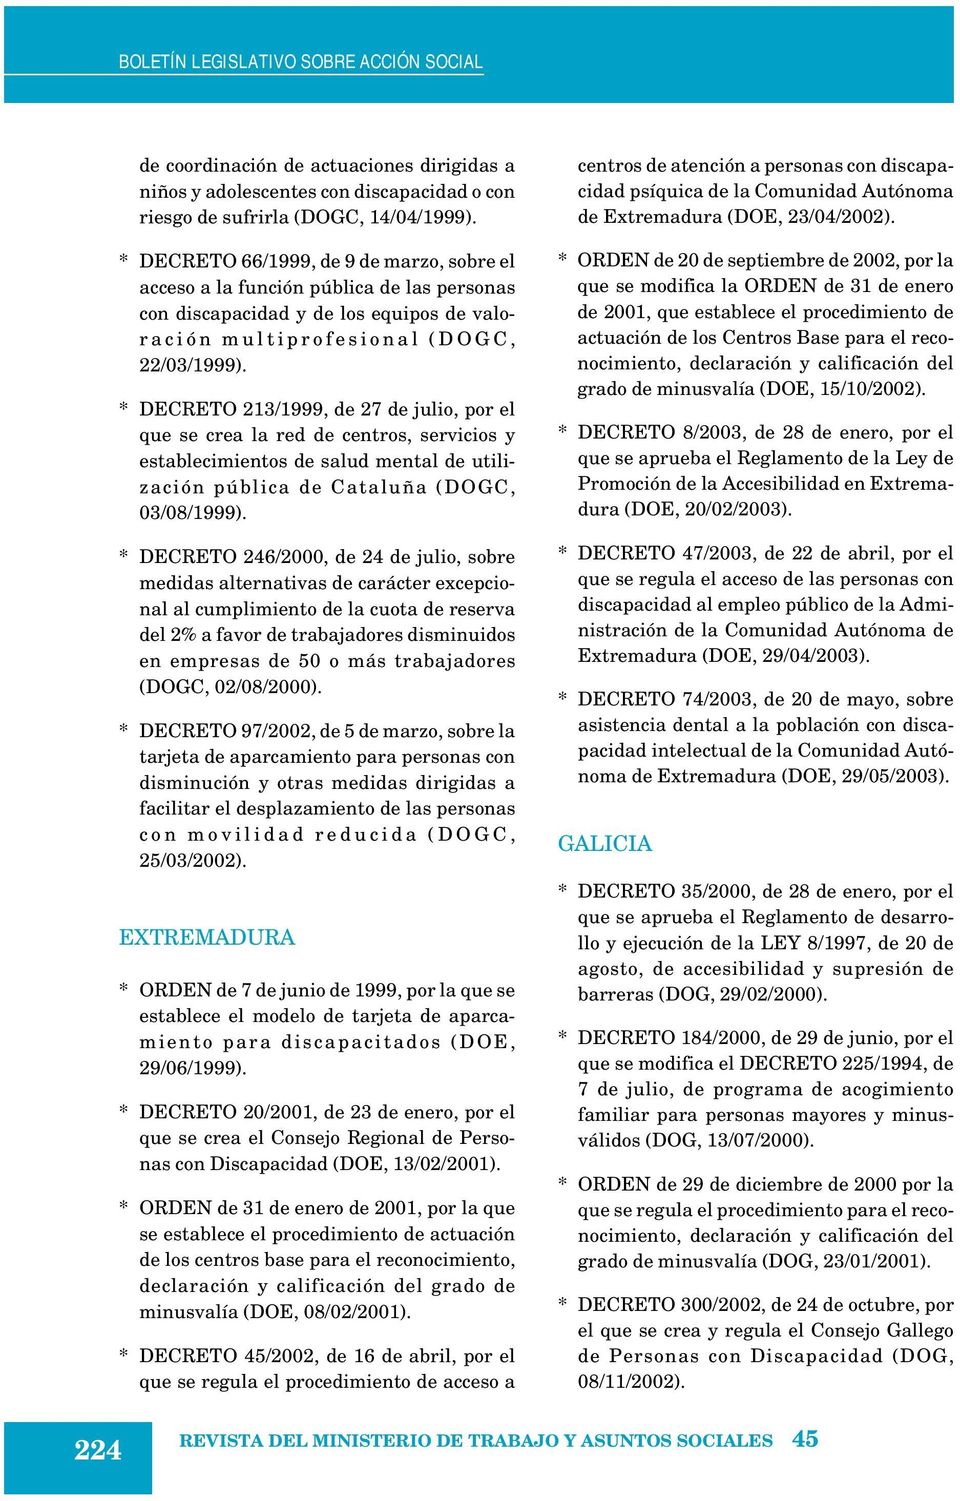 * DECRETO 213/1999, de 27 de julio, por el que se crea la red de centros, servicios y establecimientos de salud mental de utilización pública de Cataluña (DOGC, 03/08/1999).